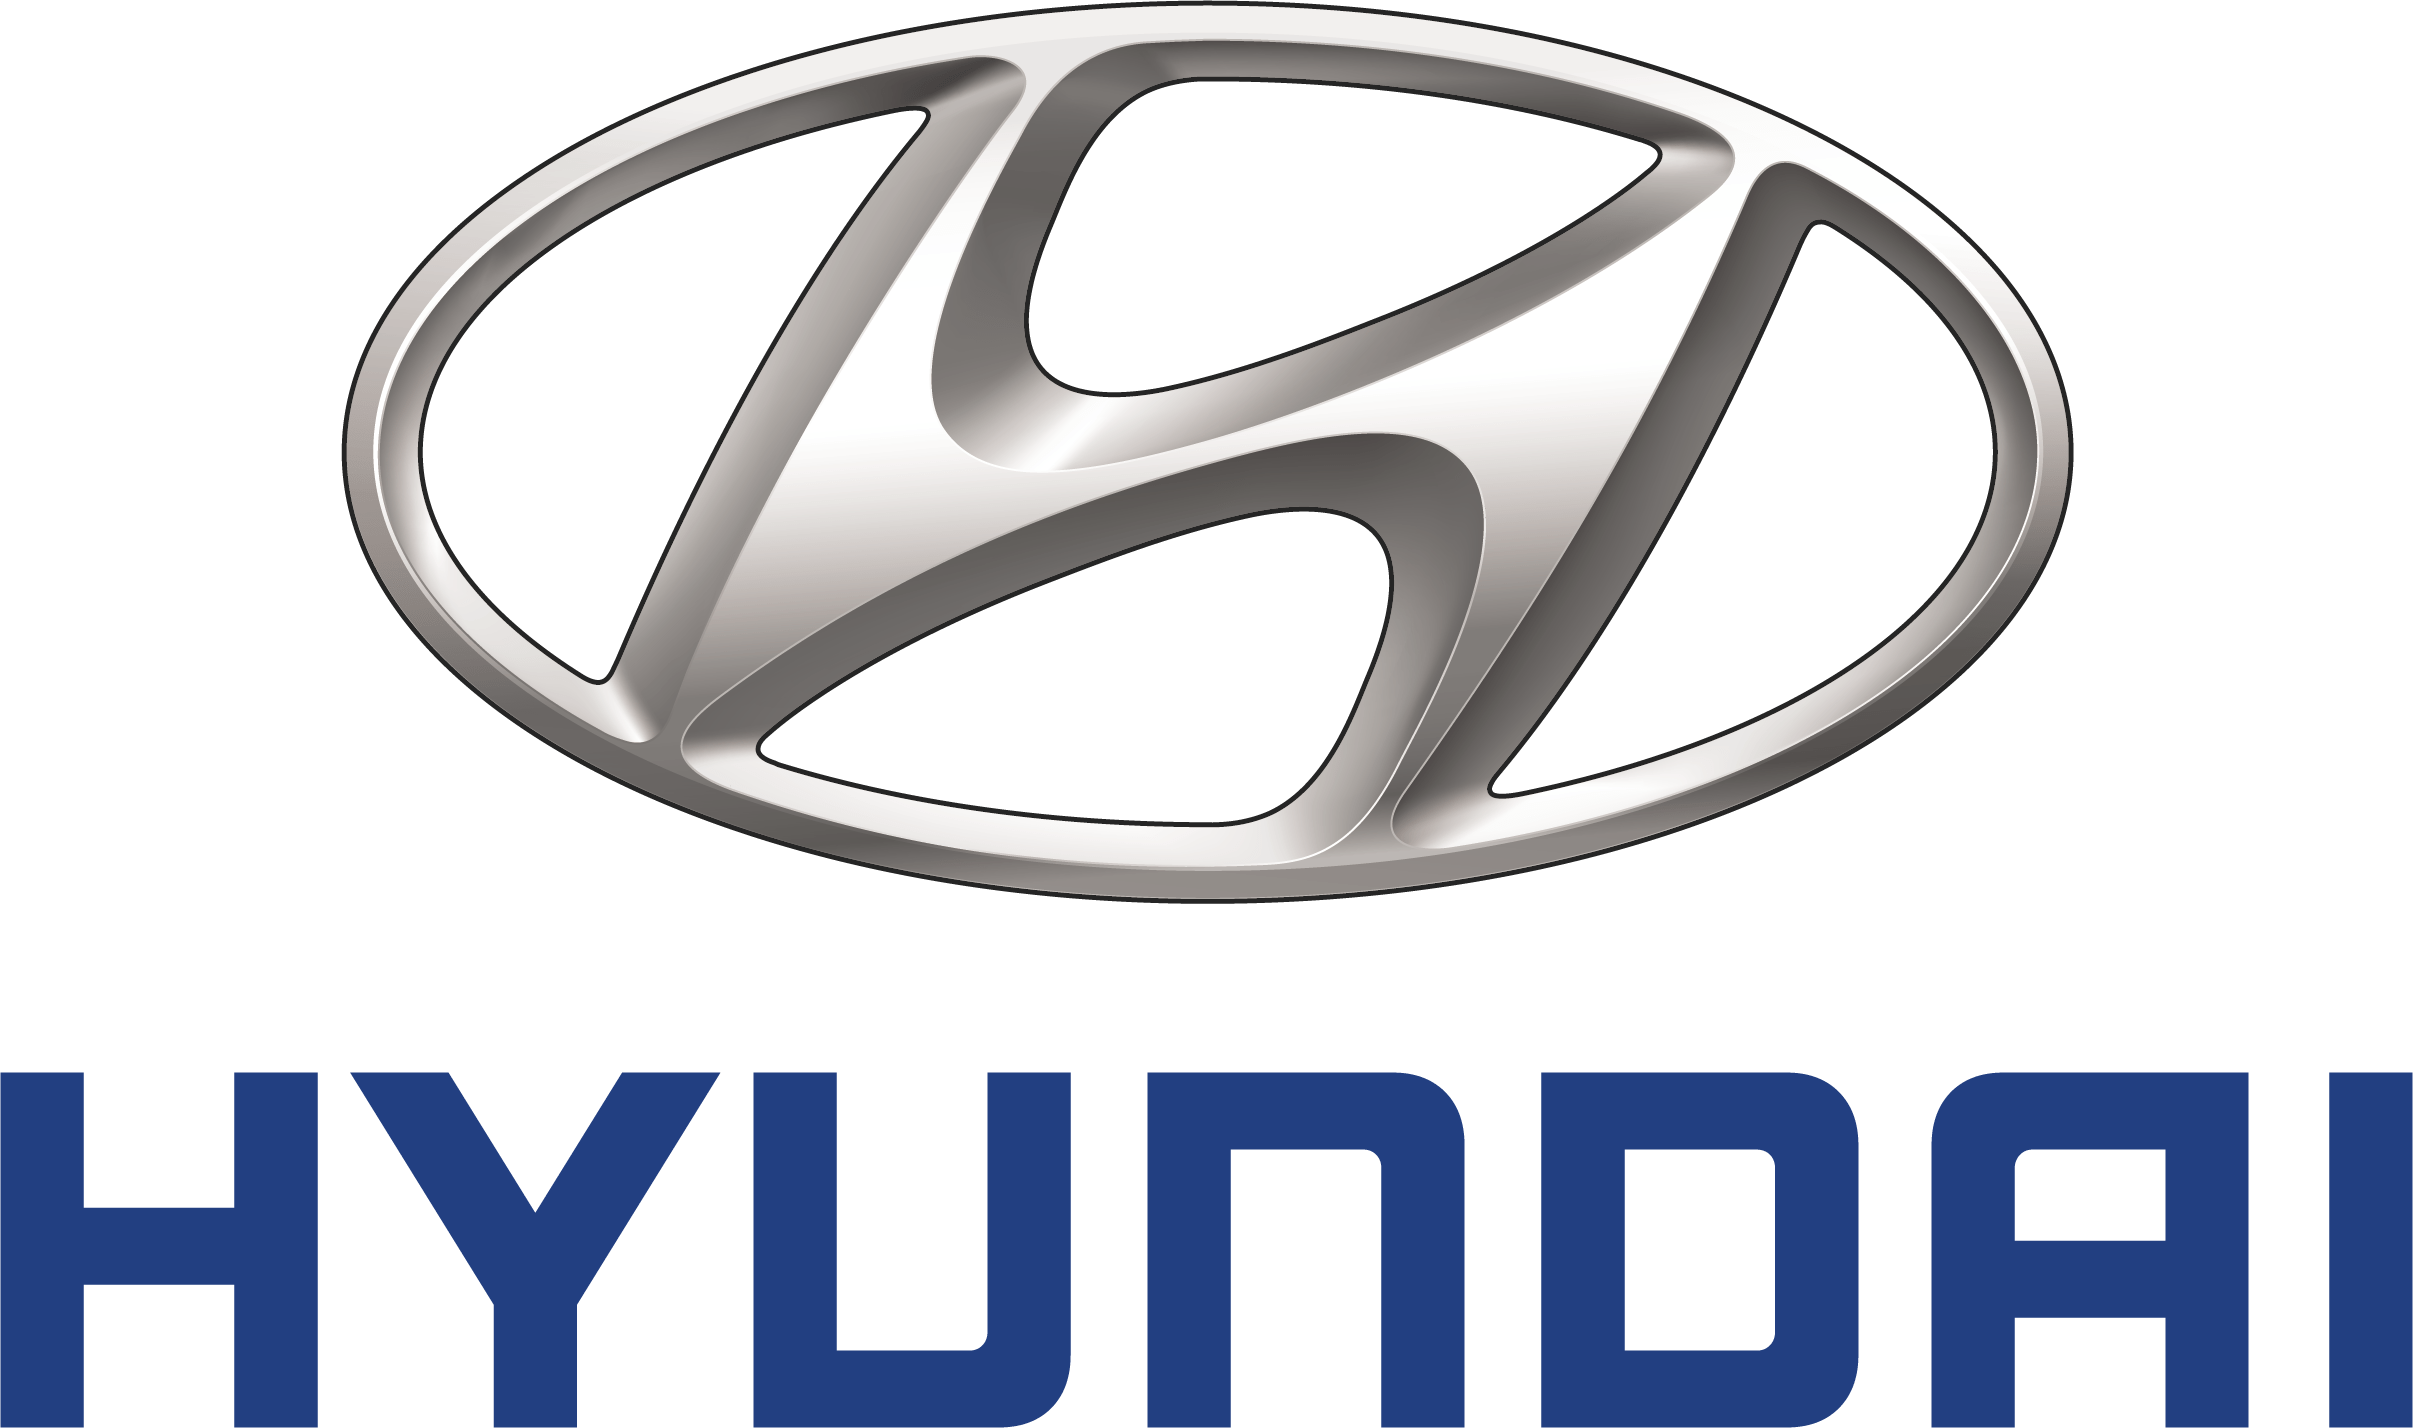 Opiniones sobre el hyundai ix35